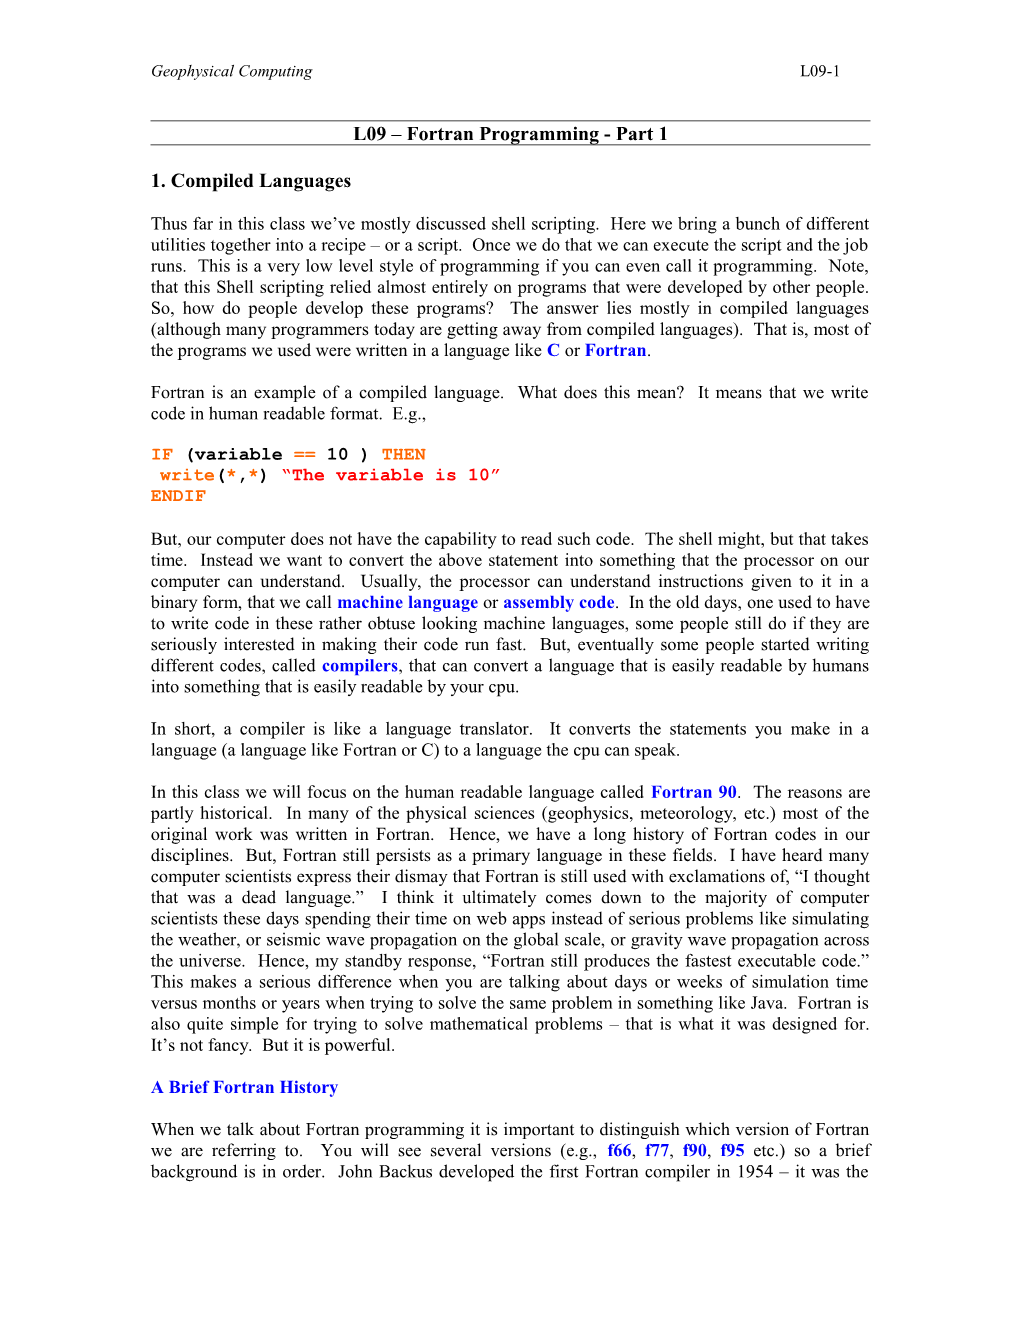 L09 Fortran Programming - Part 1